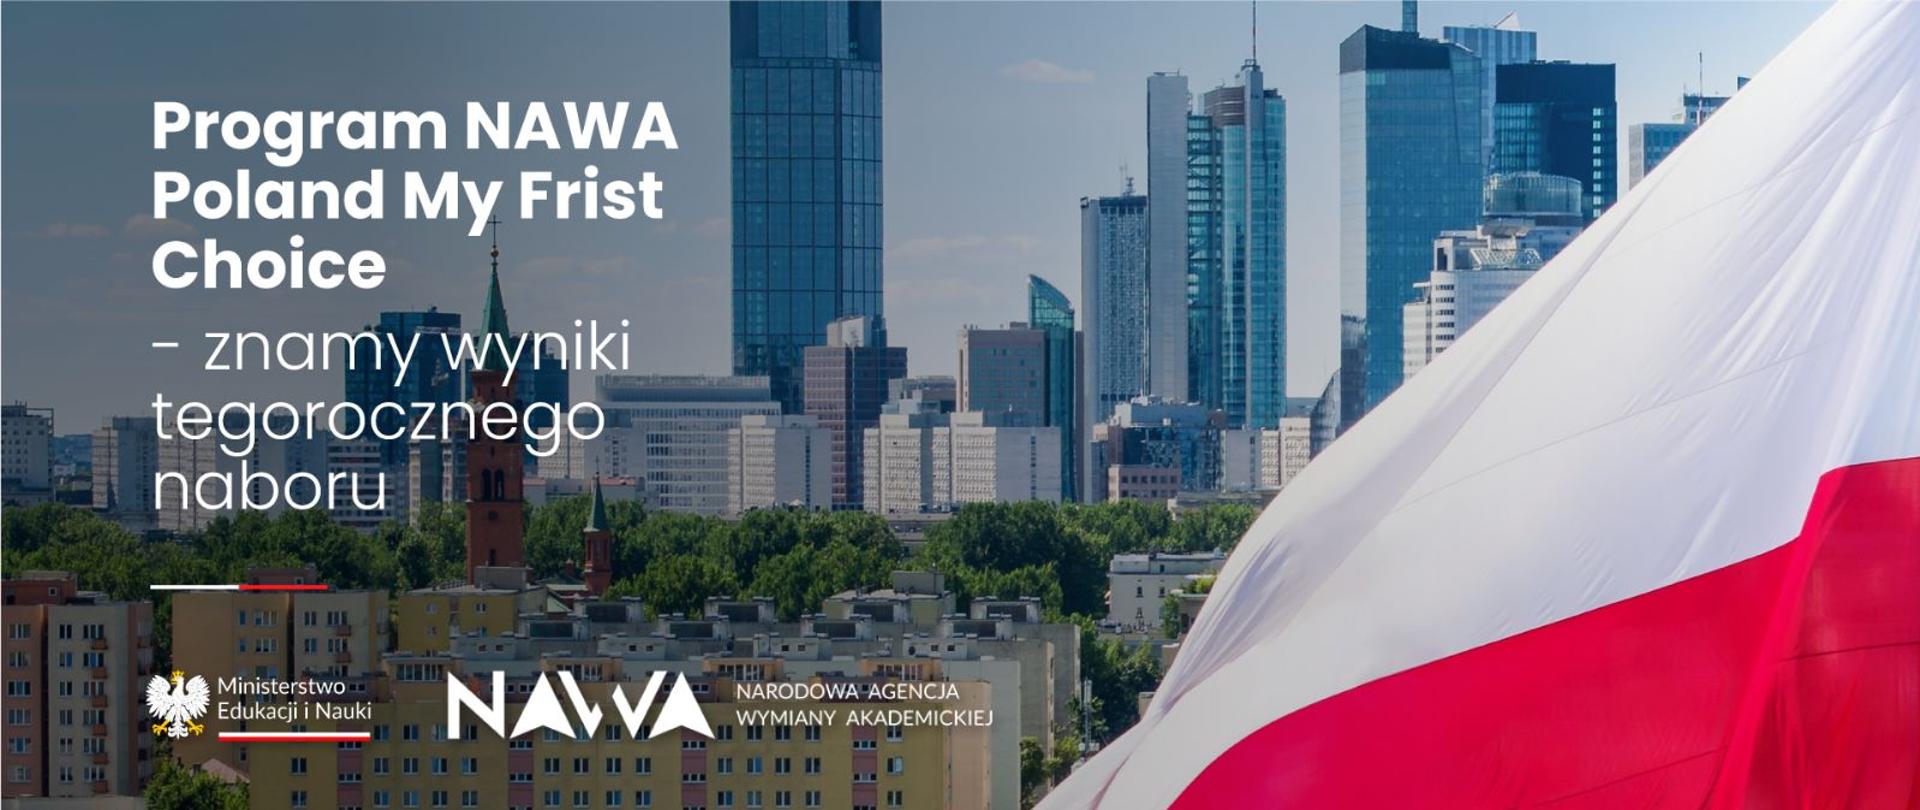 Widok na panoramę wielkiego miasta, z boku polska flaga, obok napis Program NAWA Poland My First Choice - znamy wyniki tegorocznego naboru.